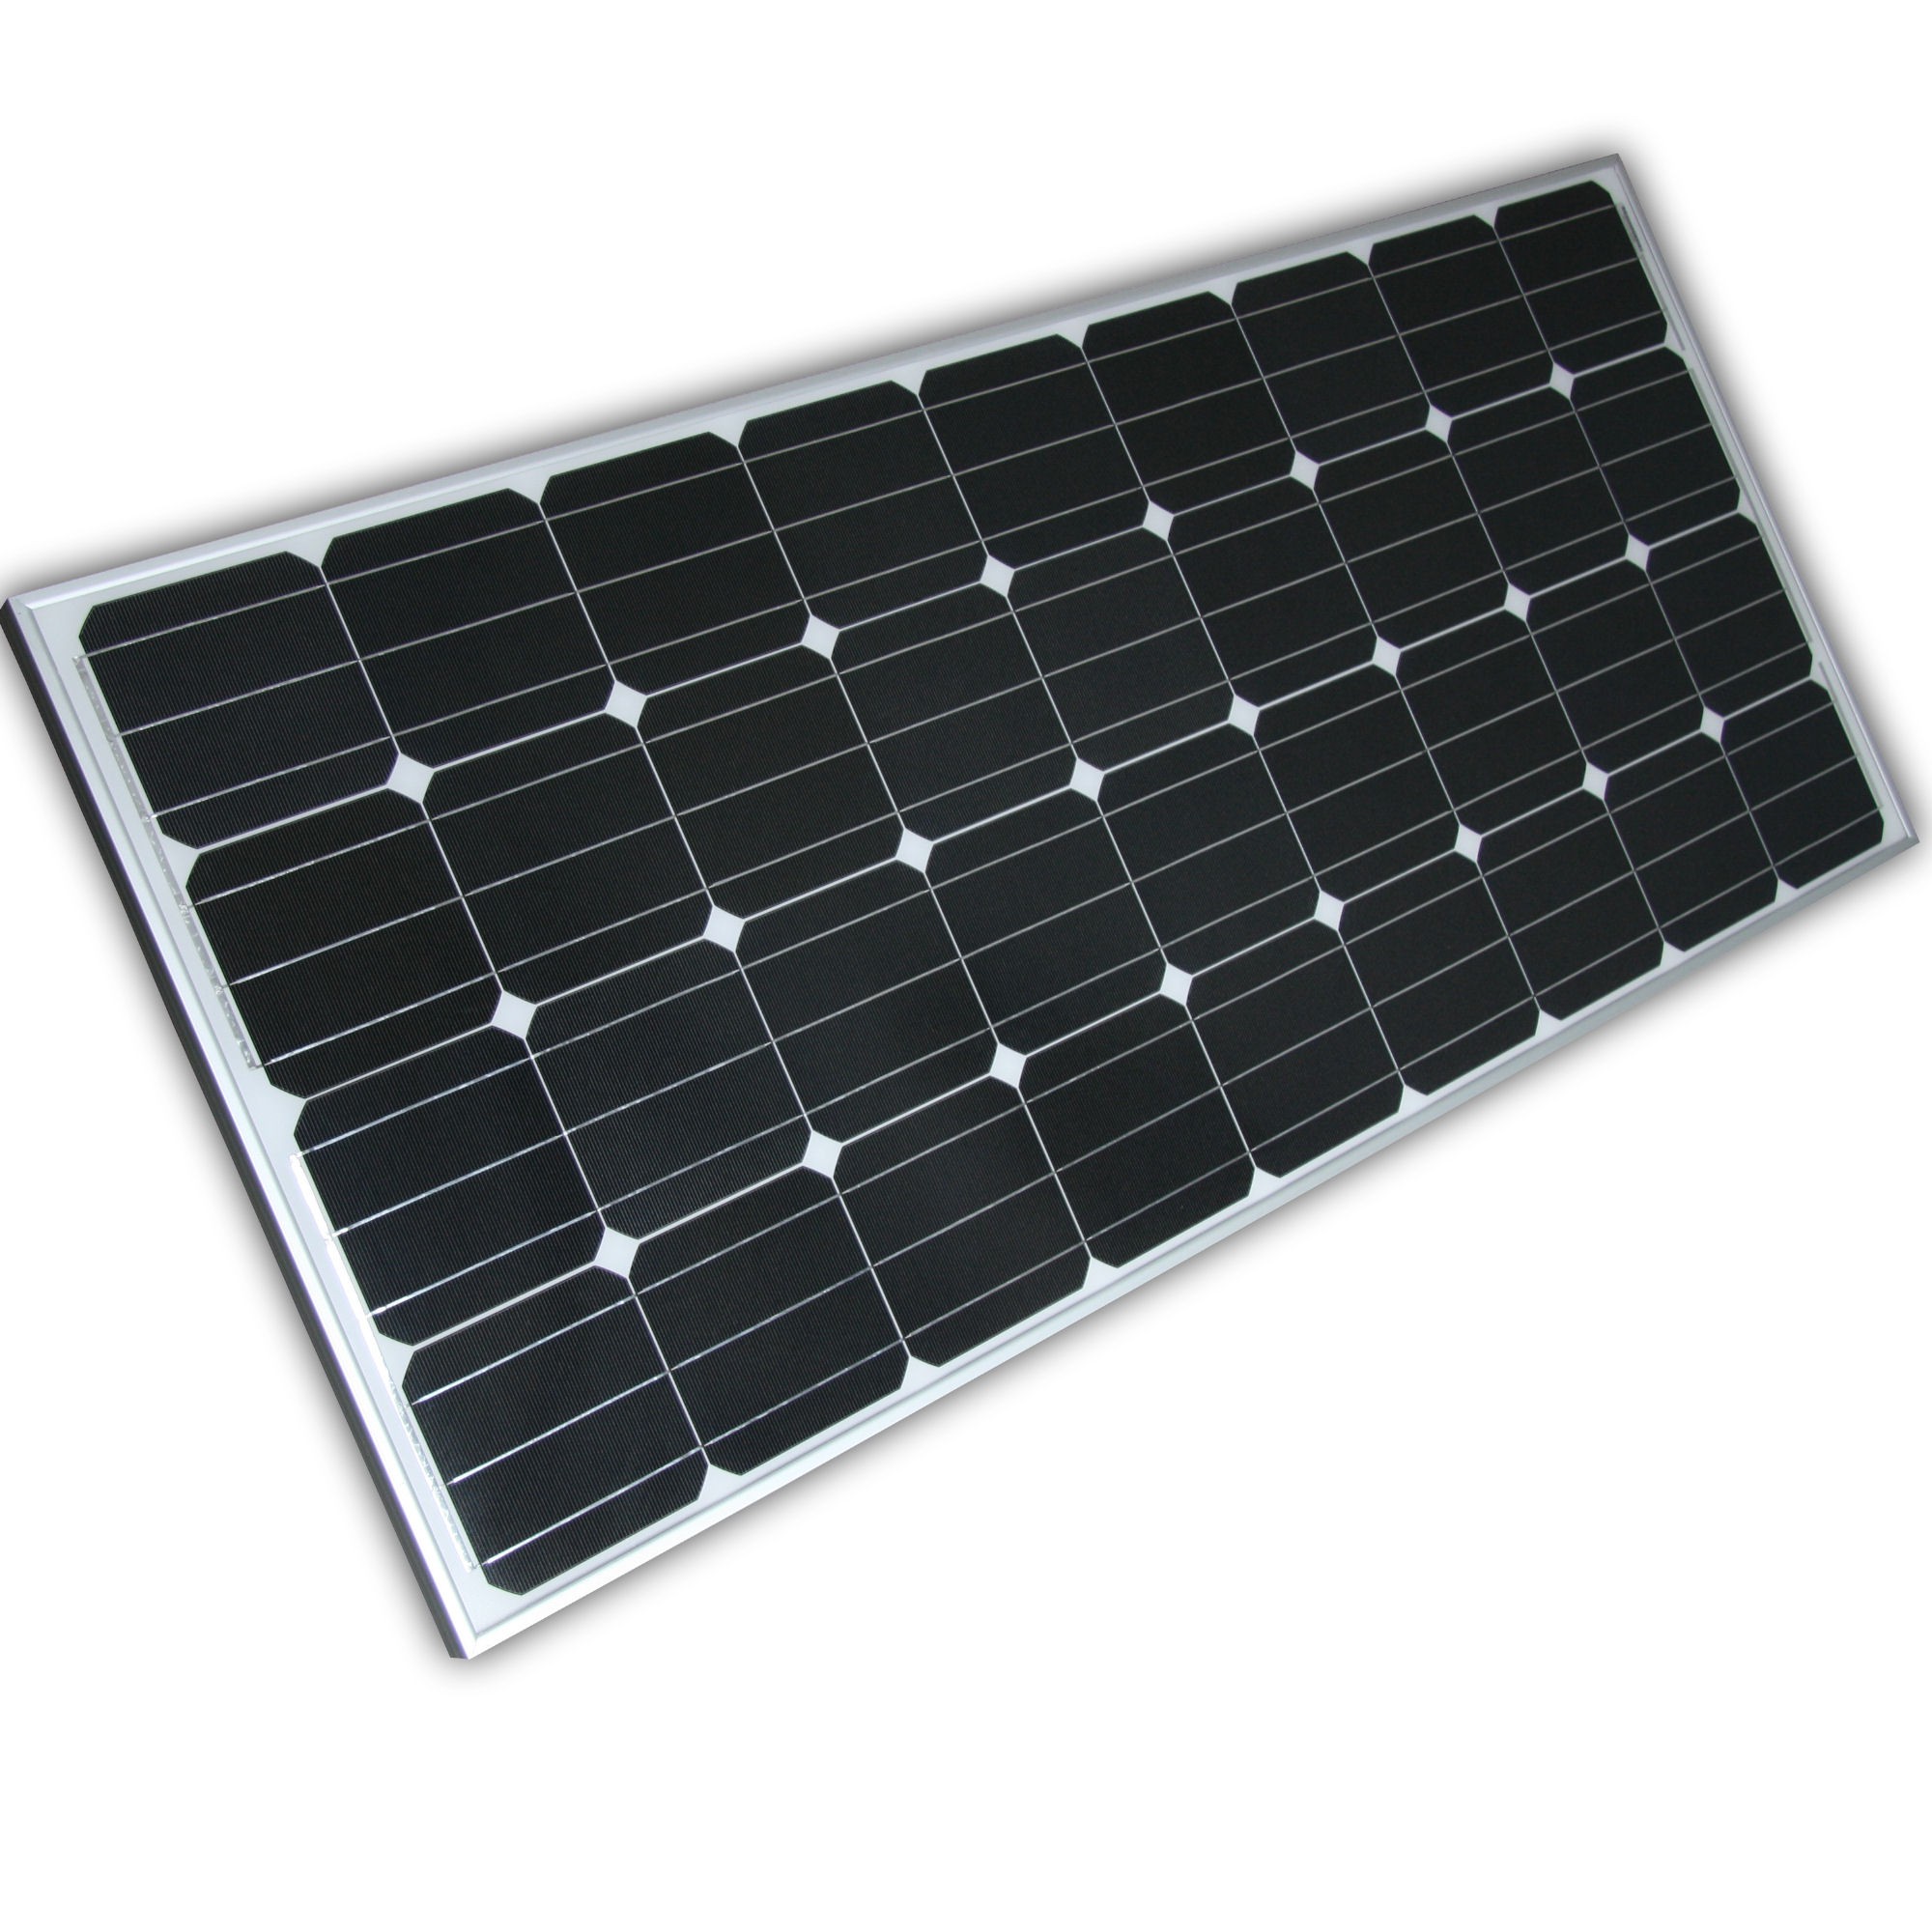 Solarmodule kaufen: Die perfekte Lösung für mobile Stromversorgung